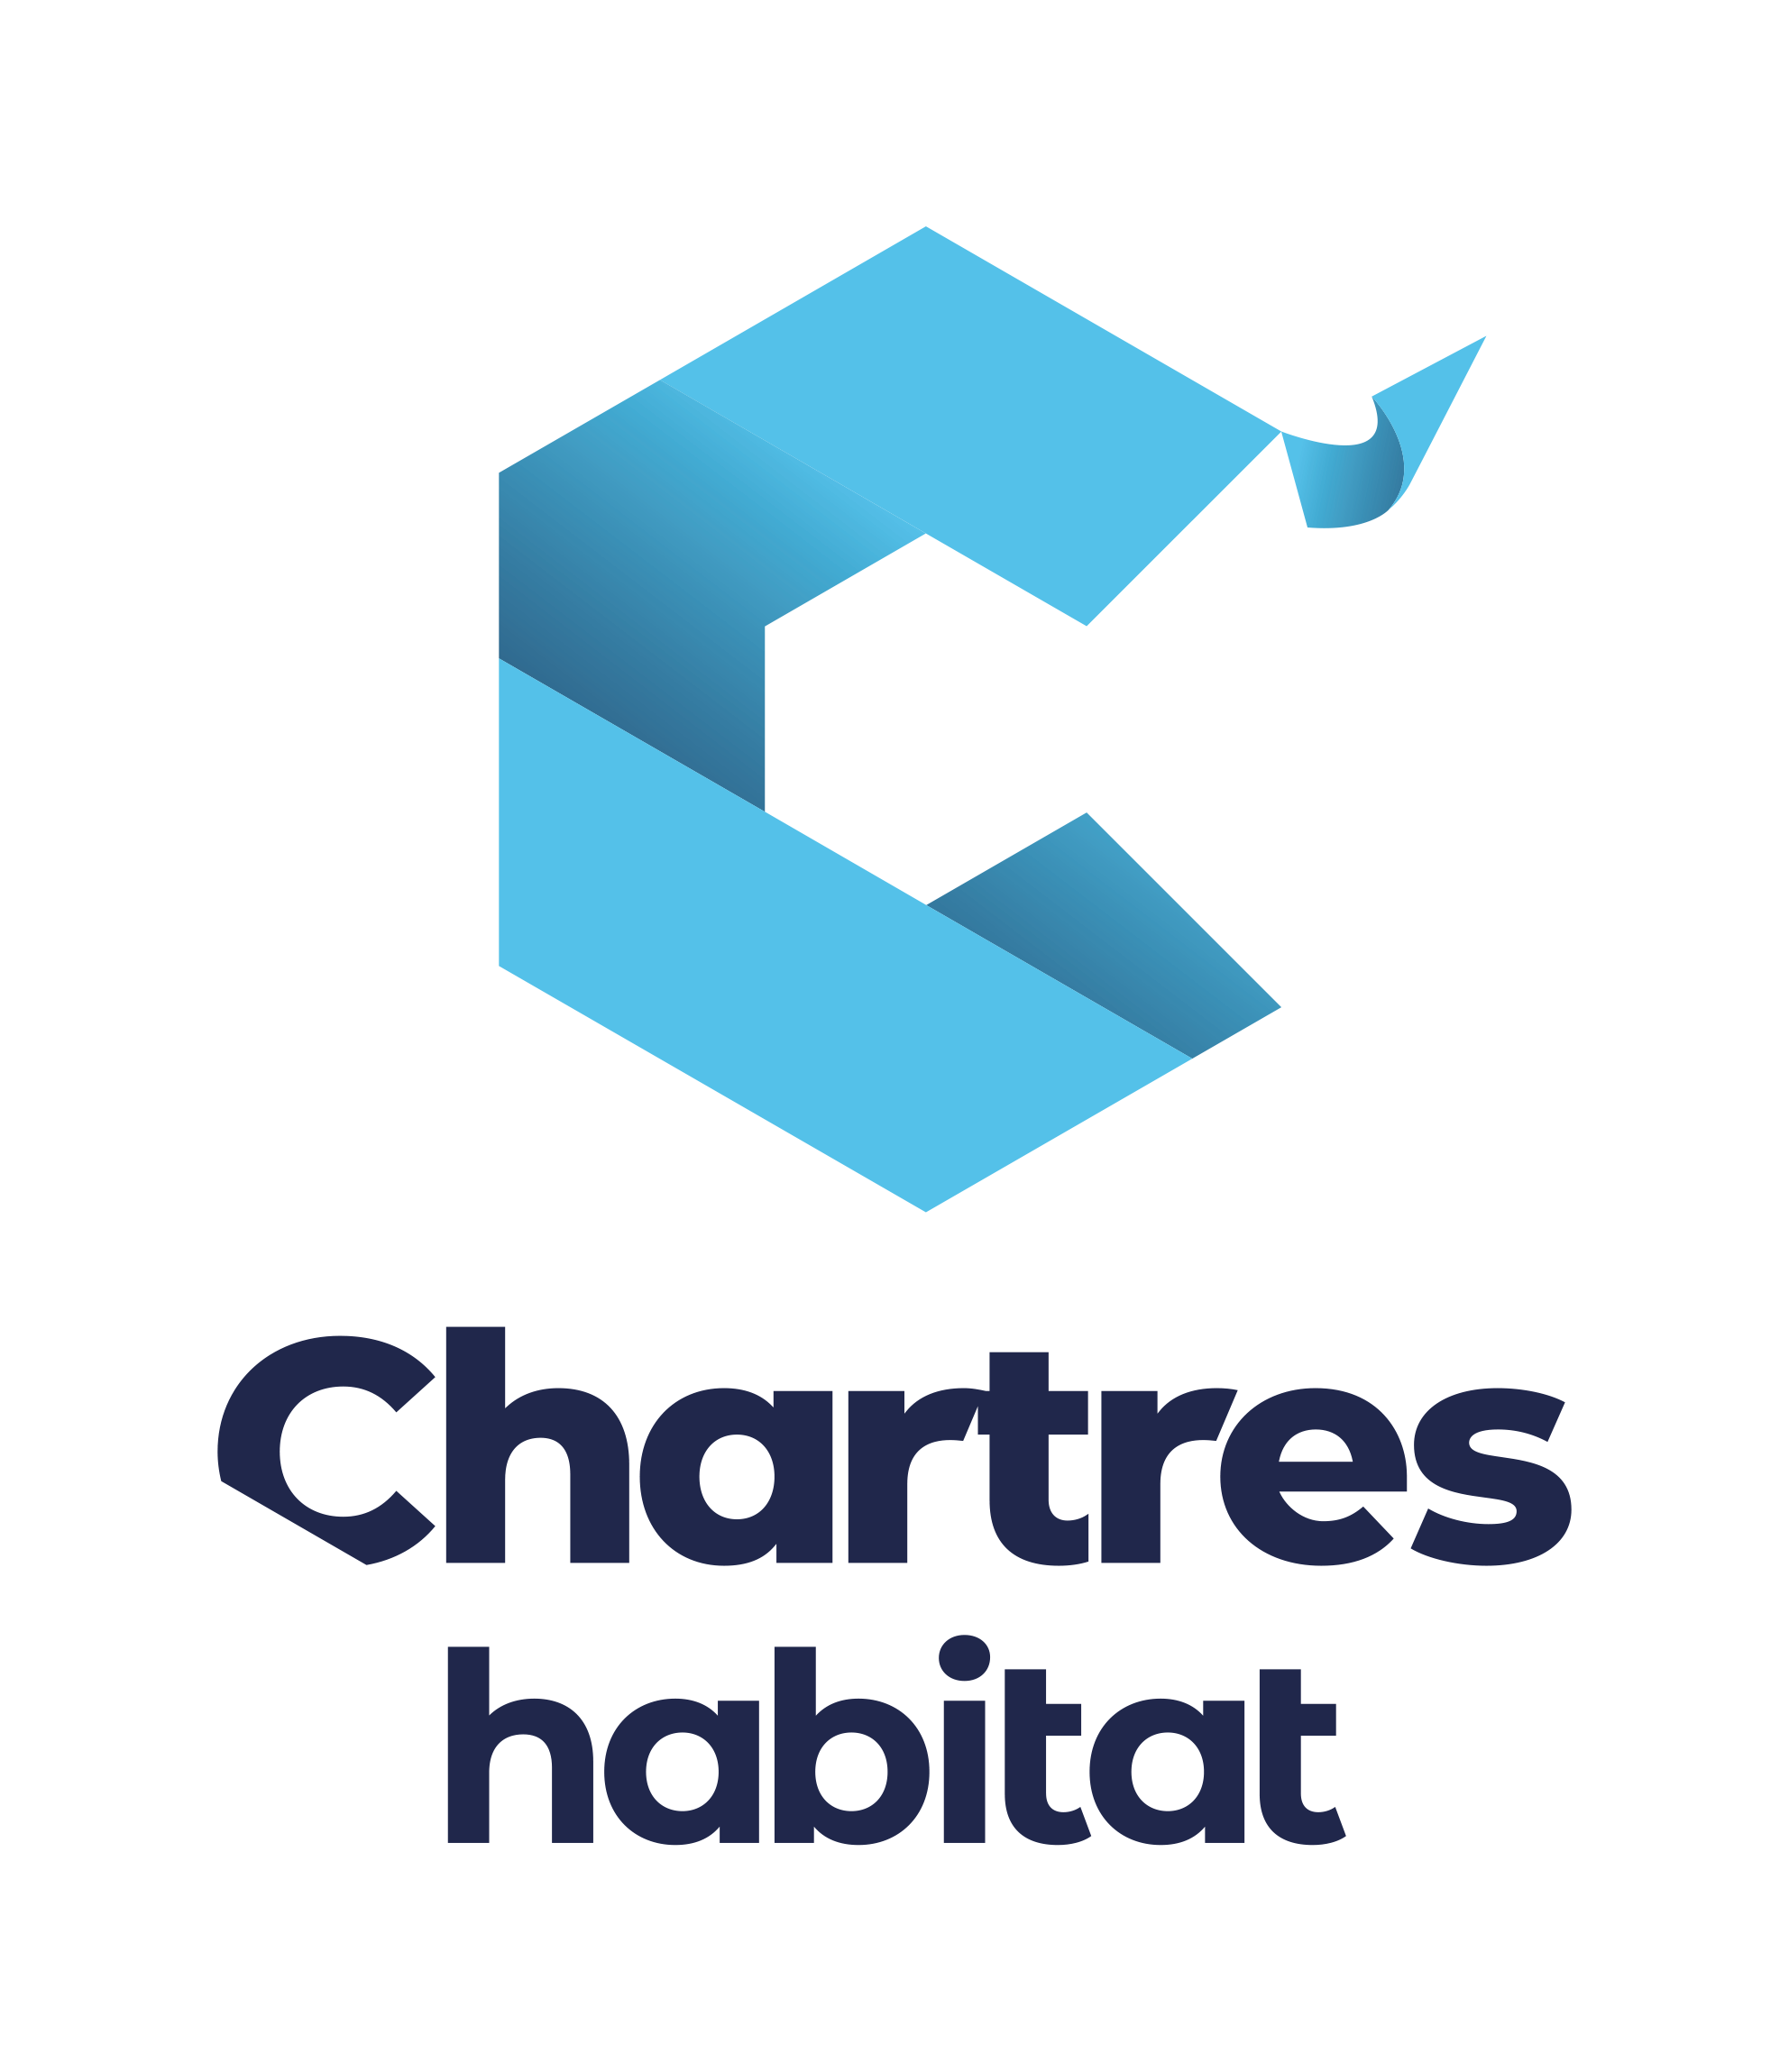 C'Chartres habitat